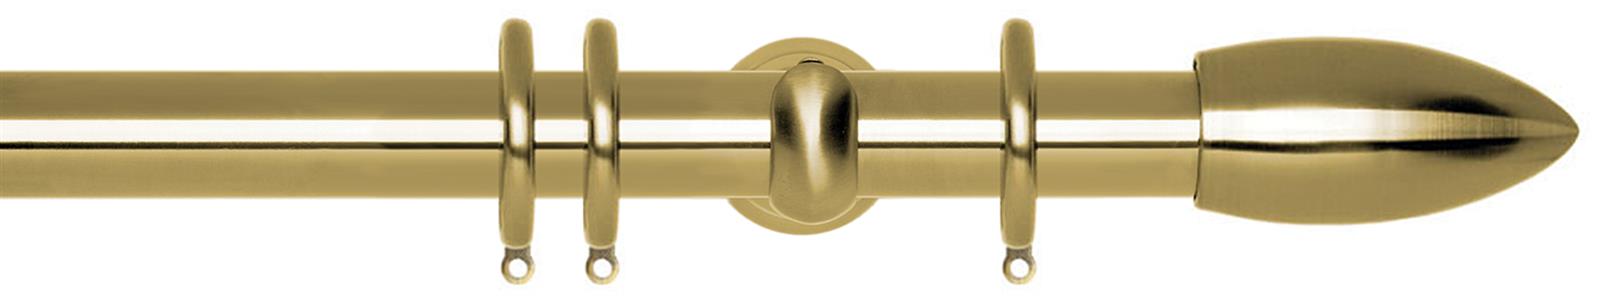 Neo 28mm Pole Spun Brass Cup Bullet